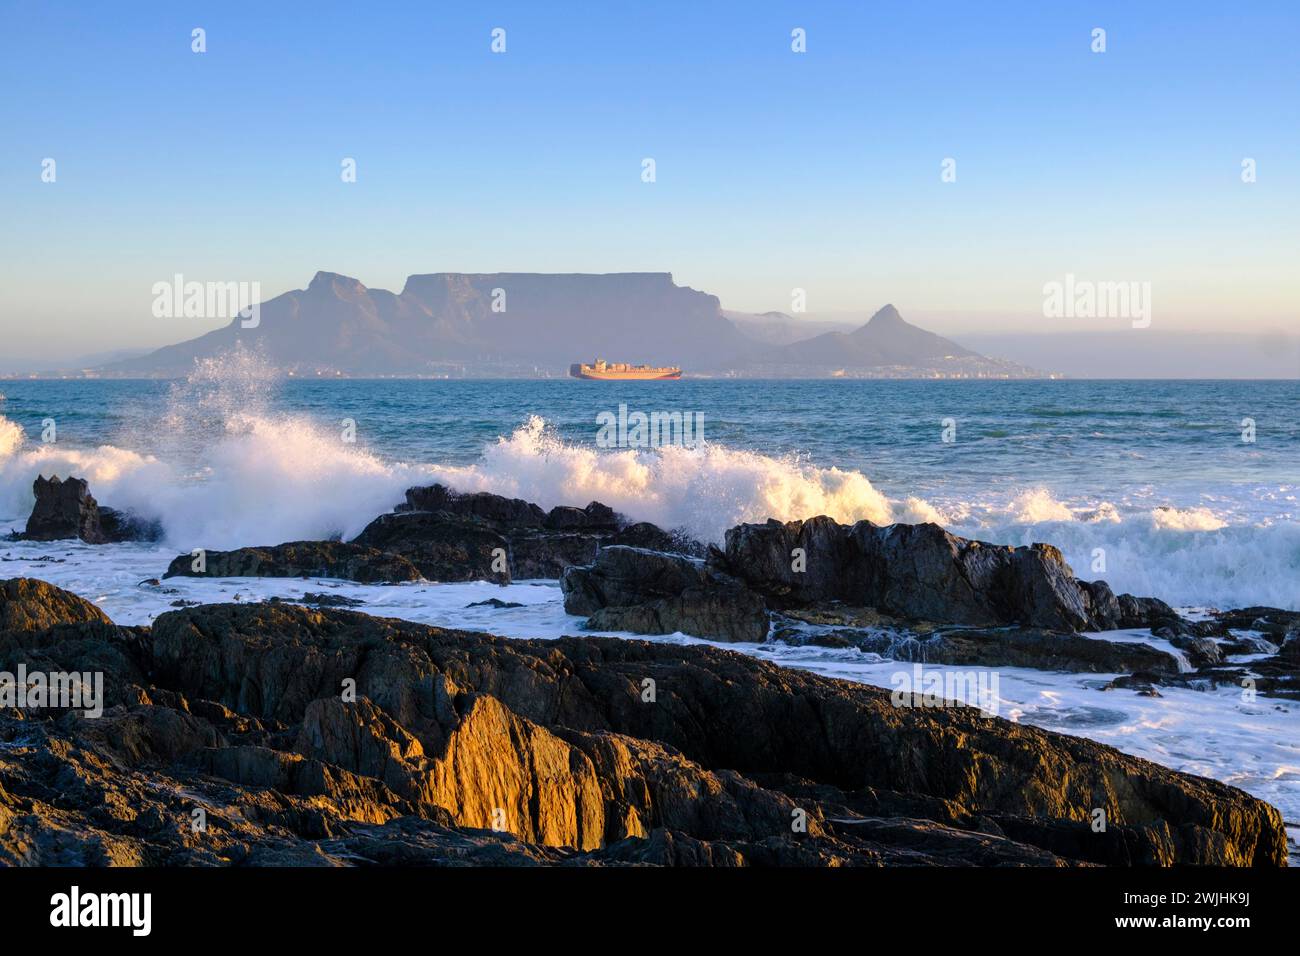 De Bloubergstrand à la silhouette de Cape Town, Cape Town, avec table Mountain, Cape Town, Western Cape, Afrique du Sud, Afrique Banque D'Images